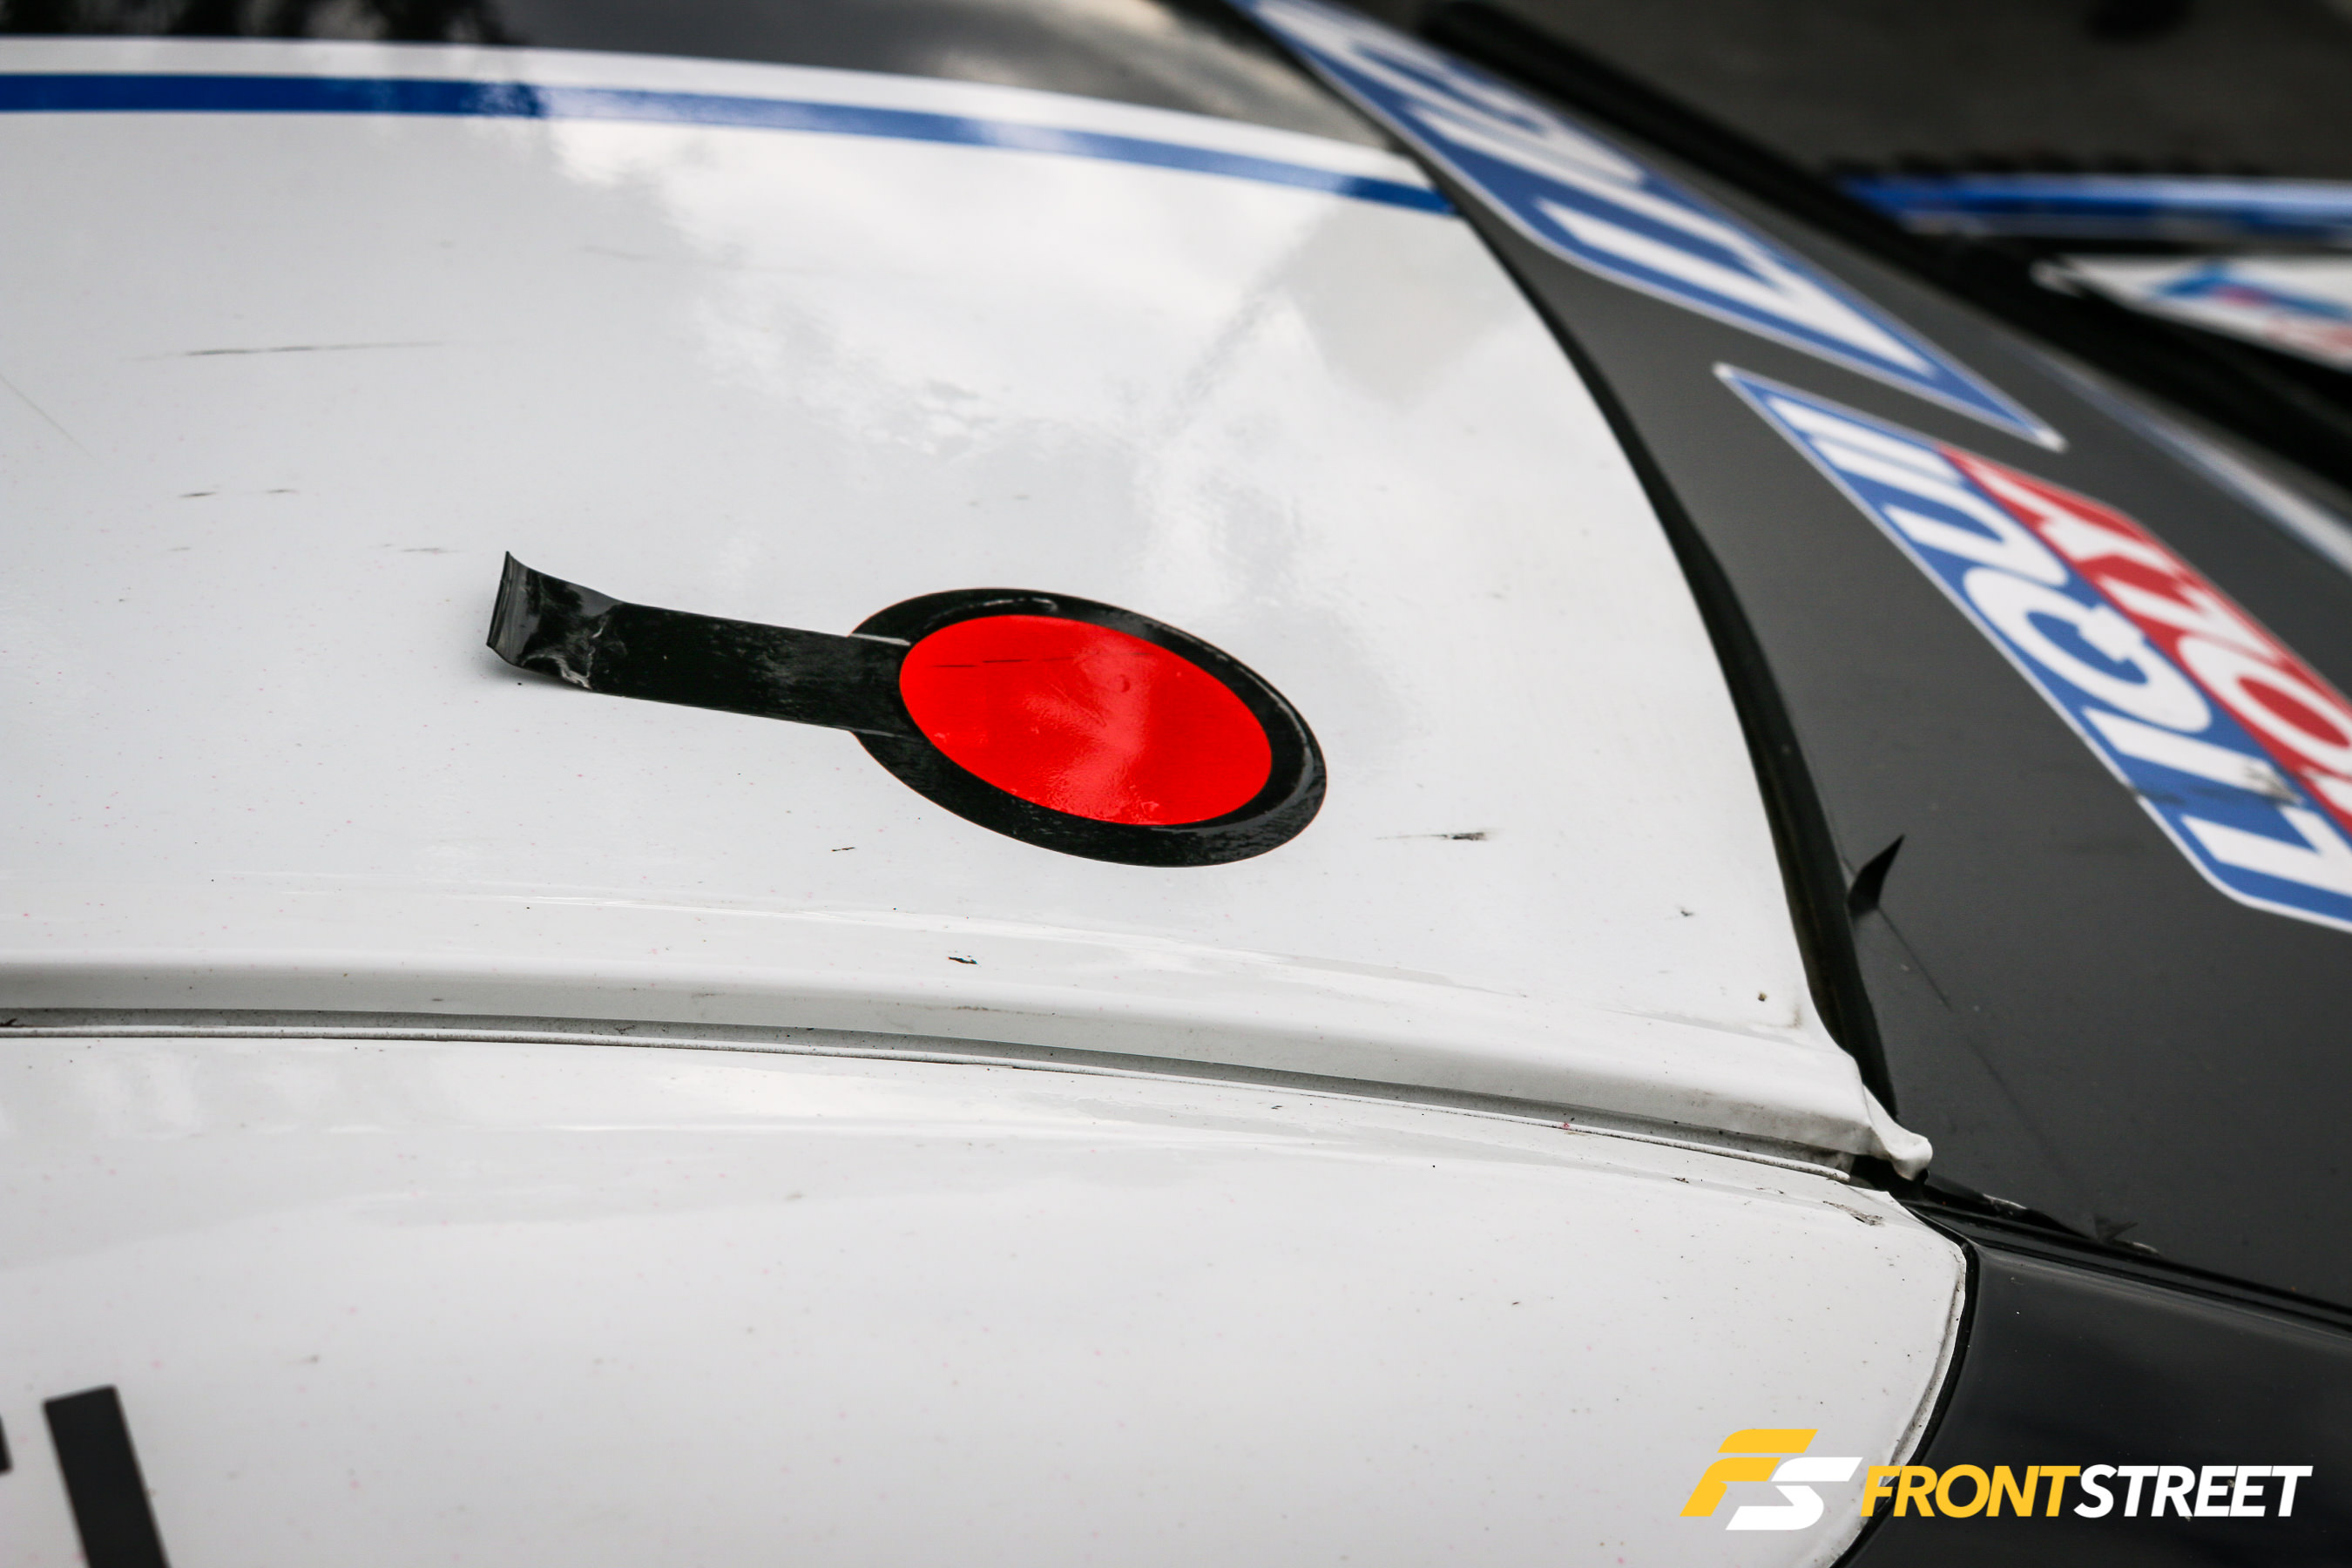 KCMG Strikes With 2-Car NISMO GT-R GT3 Race Team